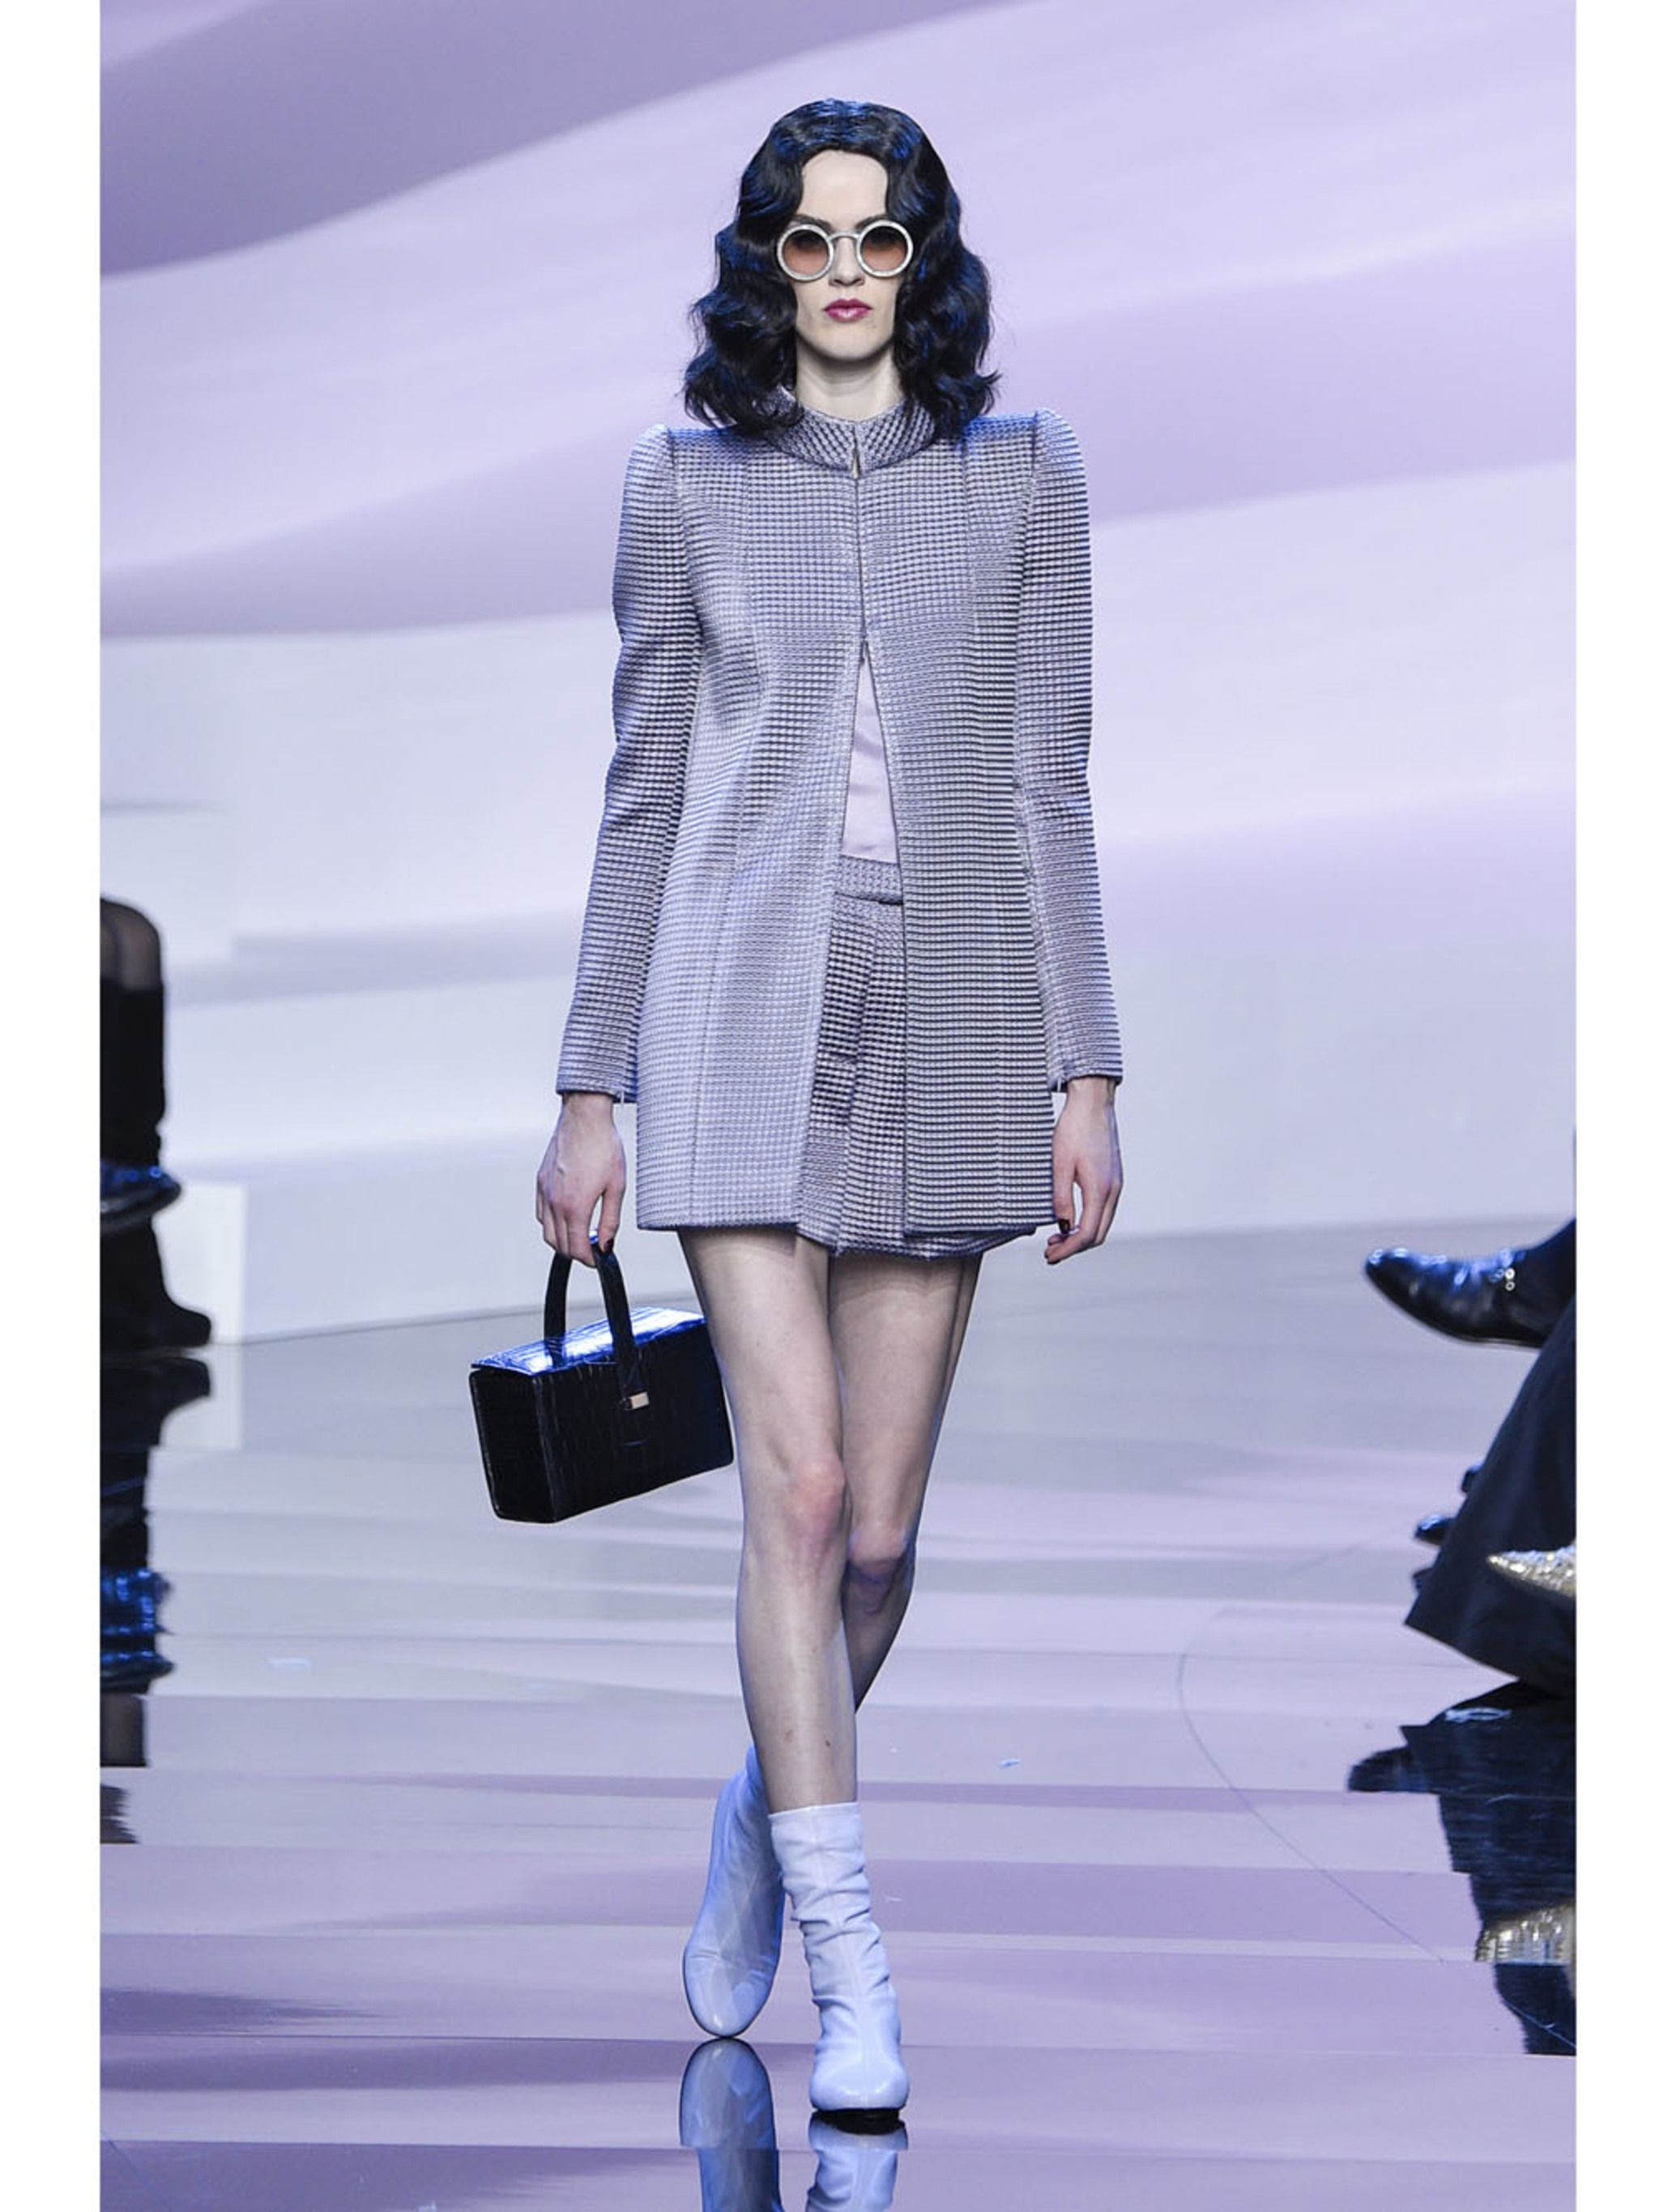 Getand De kamer schoonmaken Bedreven Giorgio Armani is heel stellig: lila is de kleur van Haute Couture s/s 2016